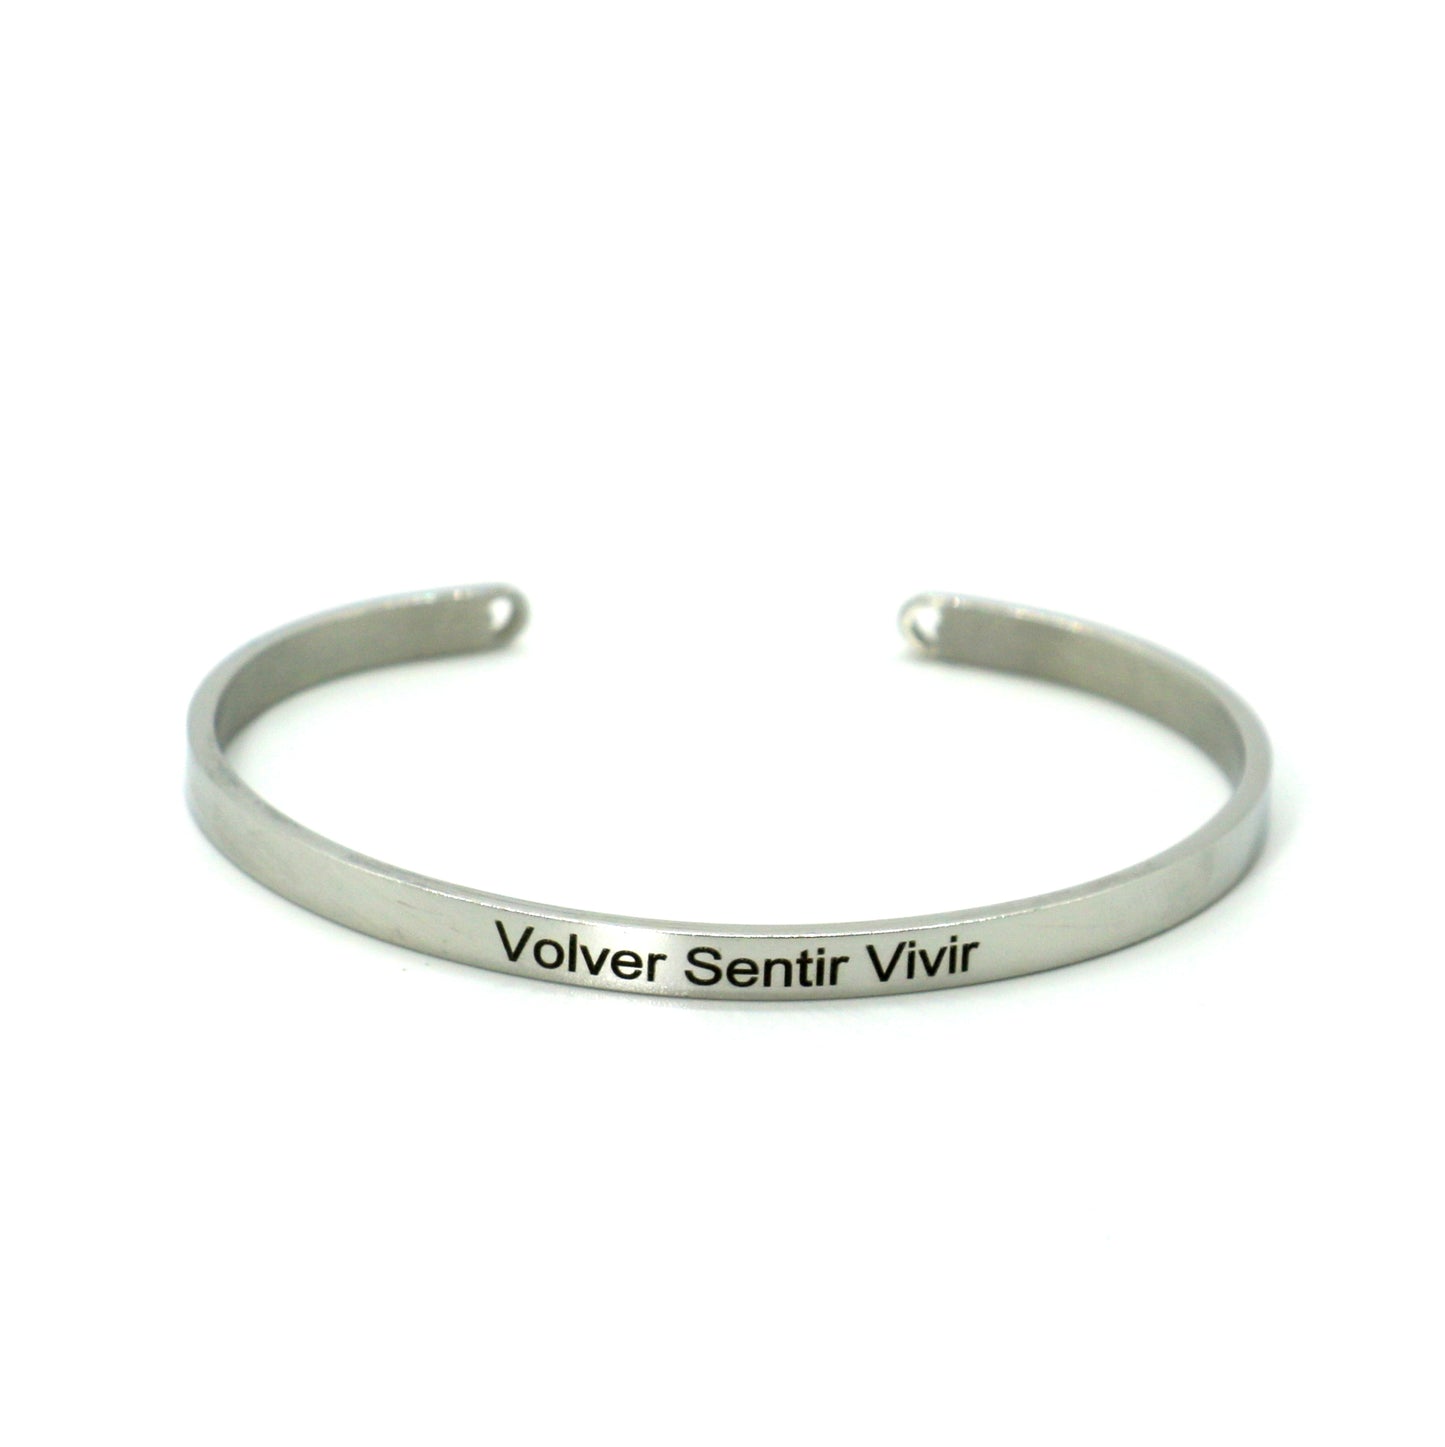 Bangle bracelet "Volver Sentir Vivir" silver